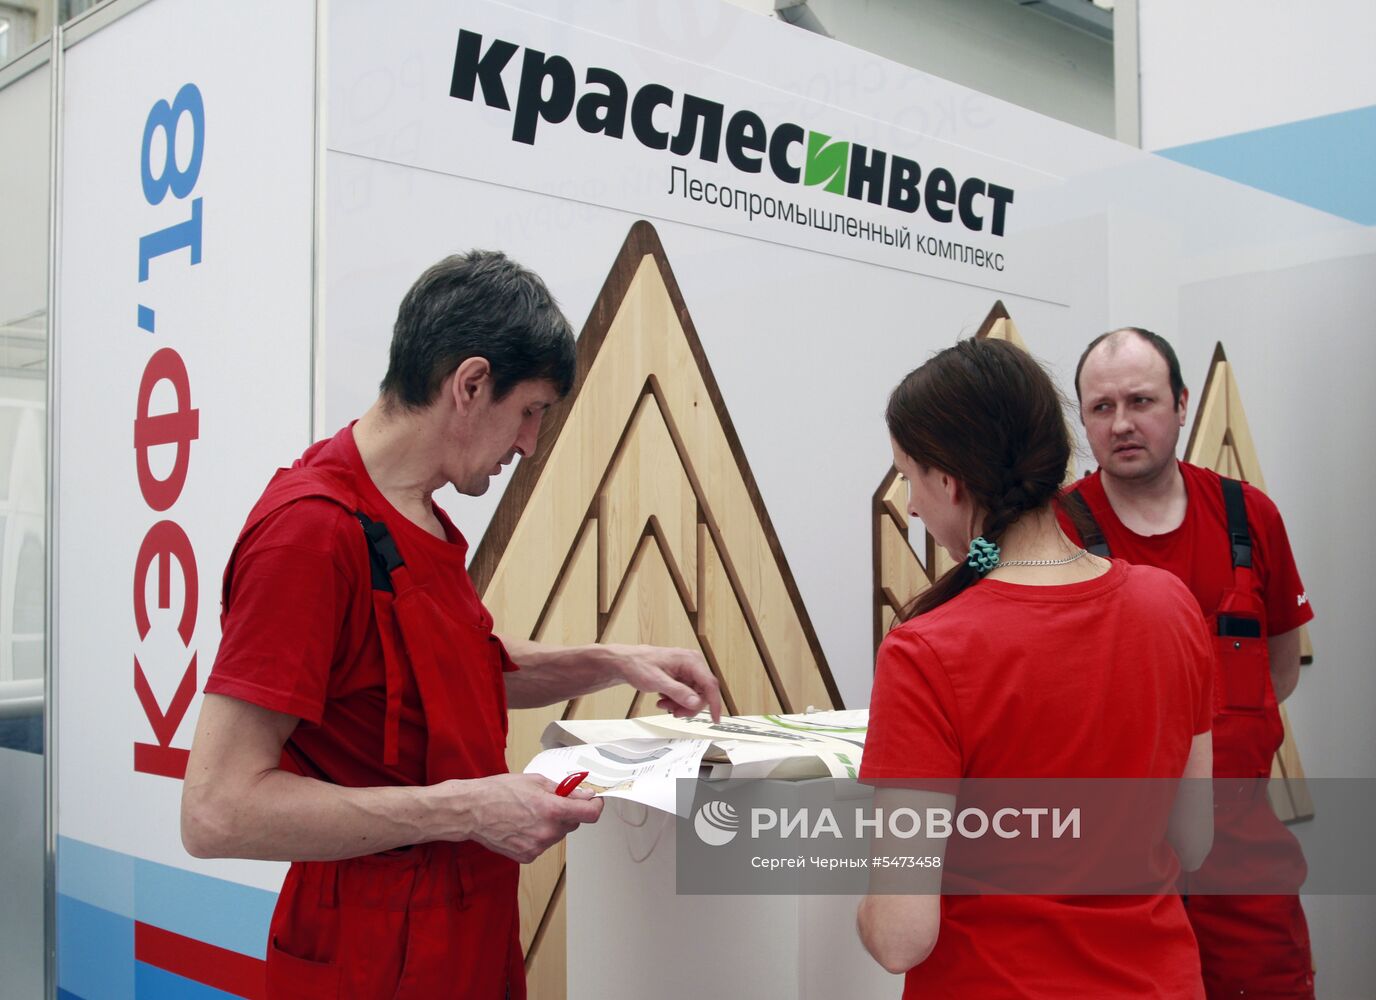 Подготовка к Красноярскому экономическому форуму